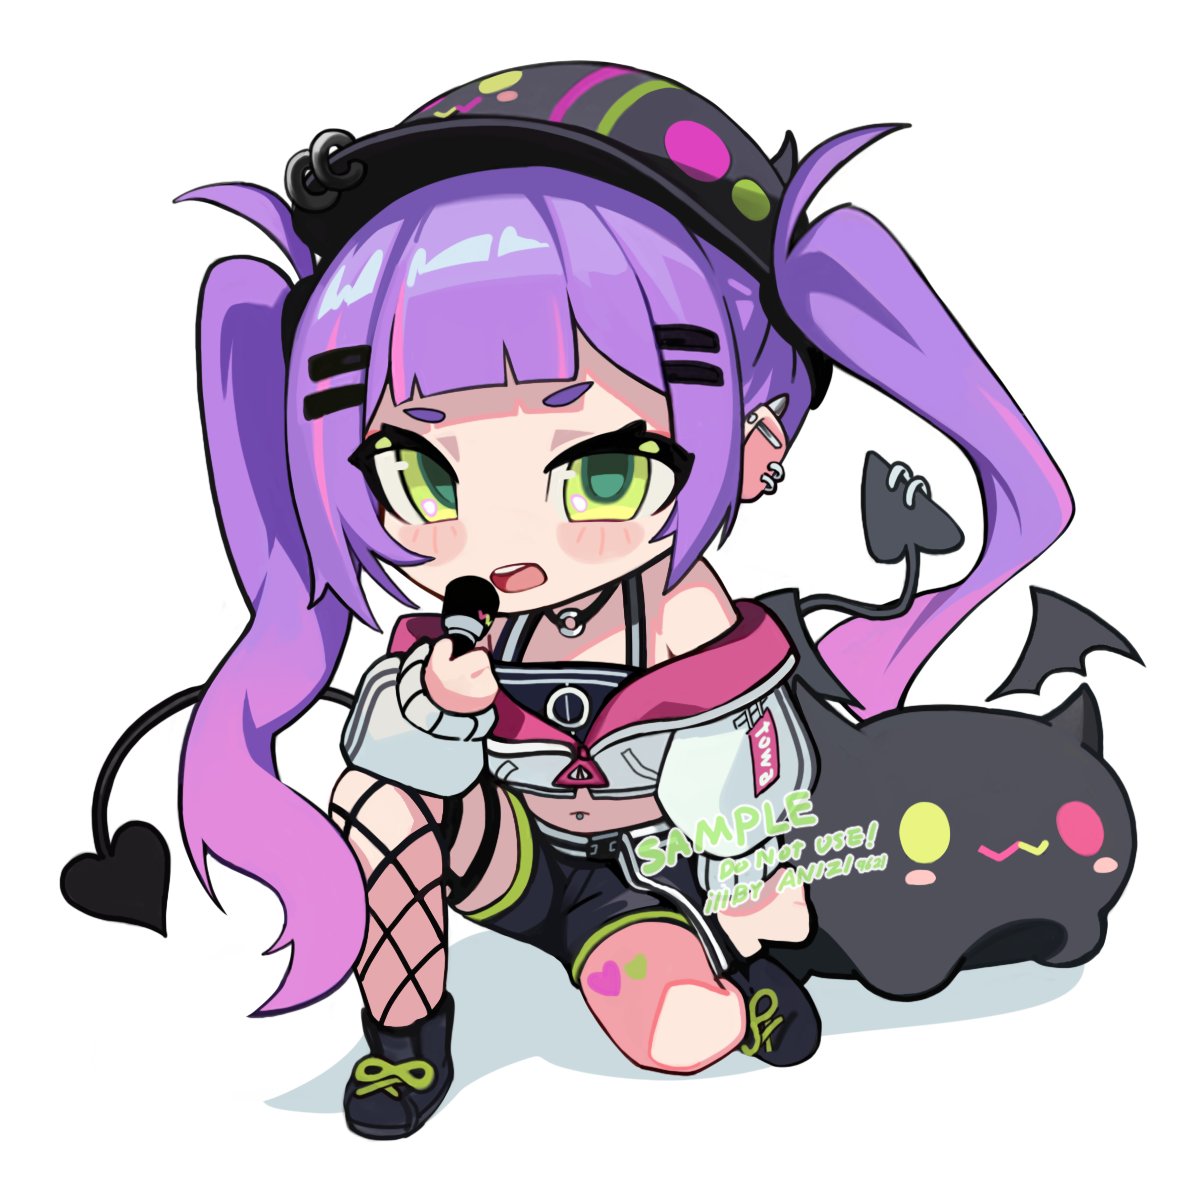 tokoyami towa 1girl chibi green eyes purple hair tail black headwear microphone  illustration images